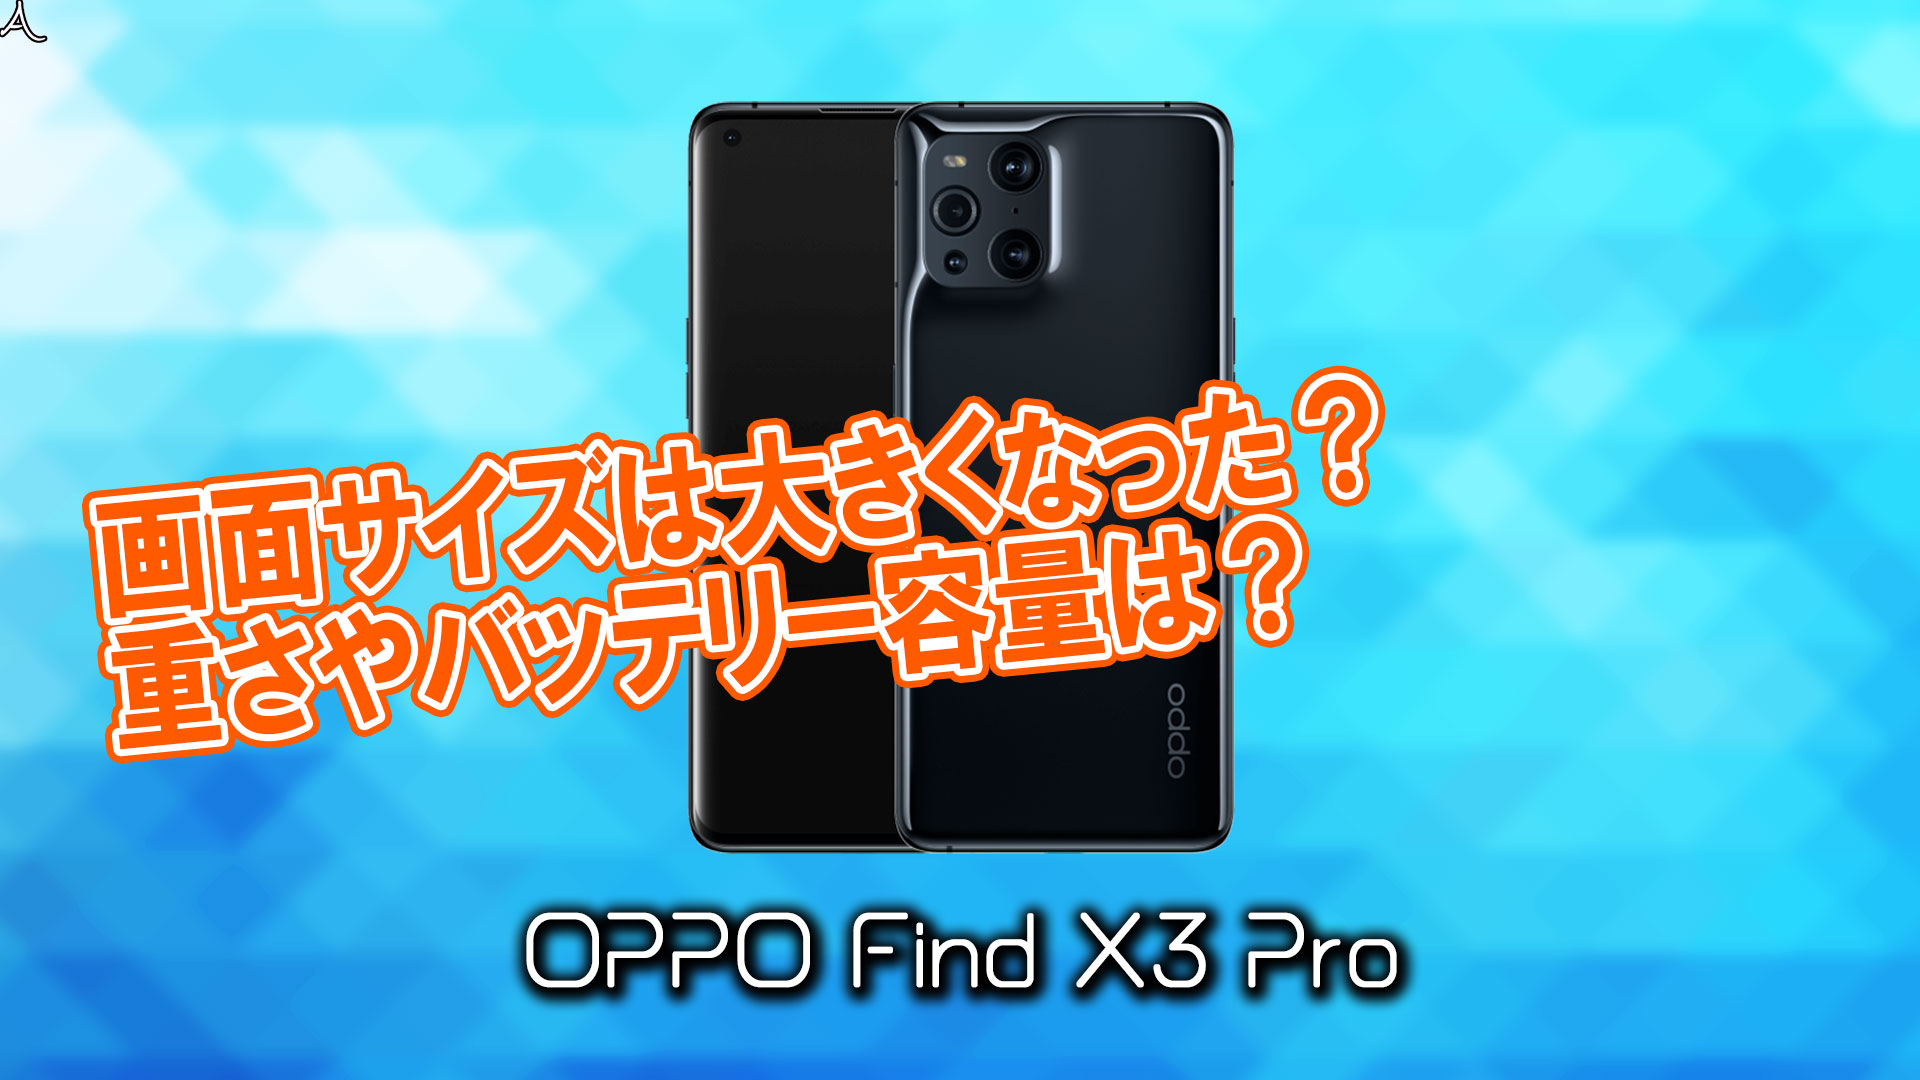 「OPPO Find X3 Pro」のサイズや重さを他のスマホと細かく比較